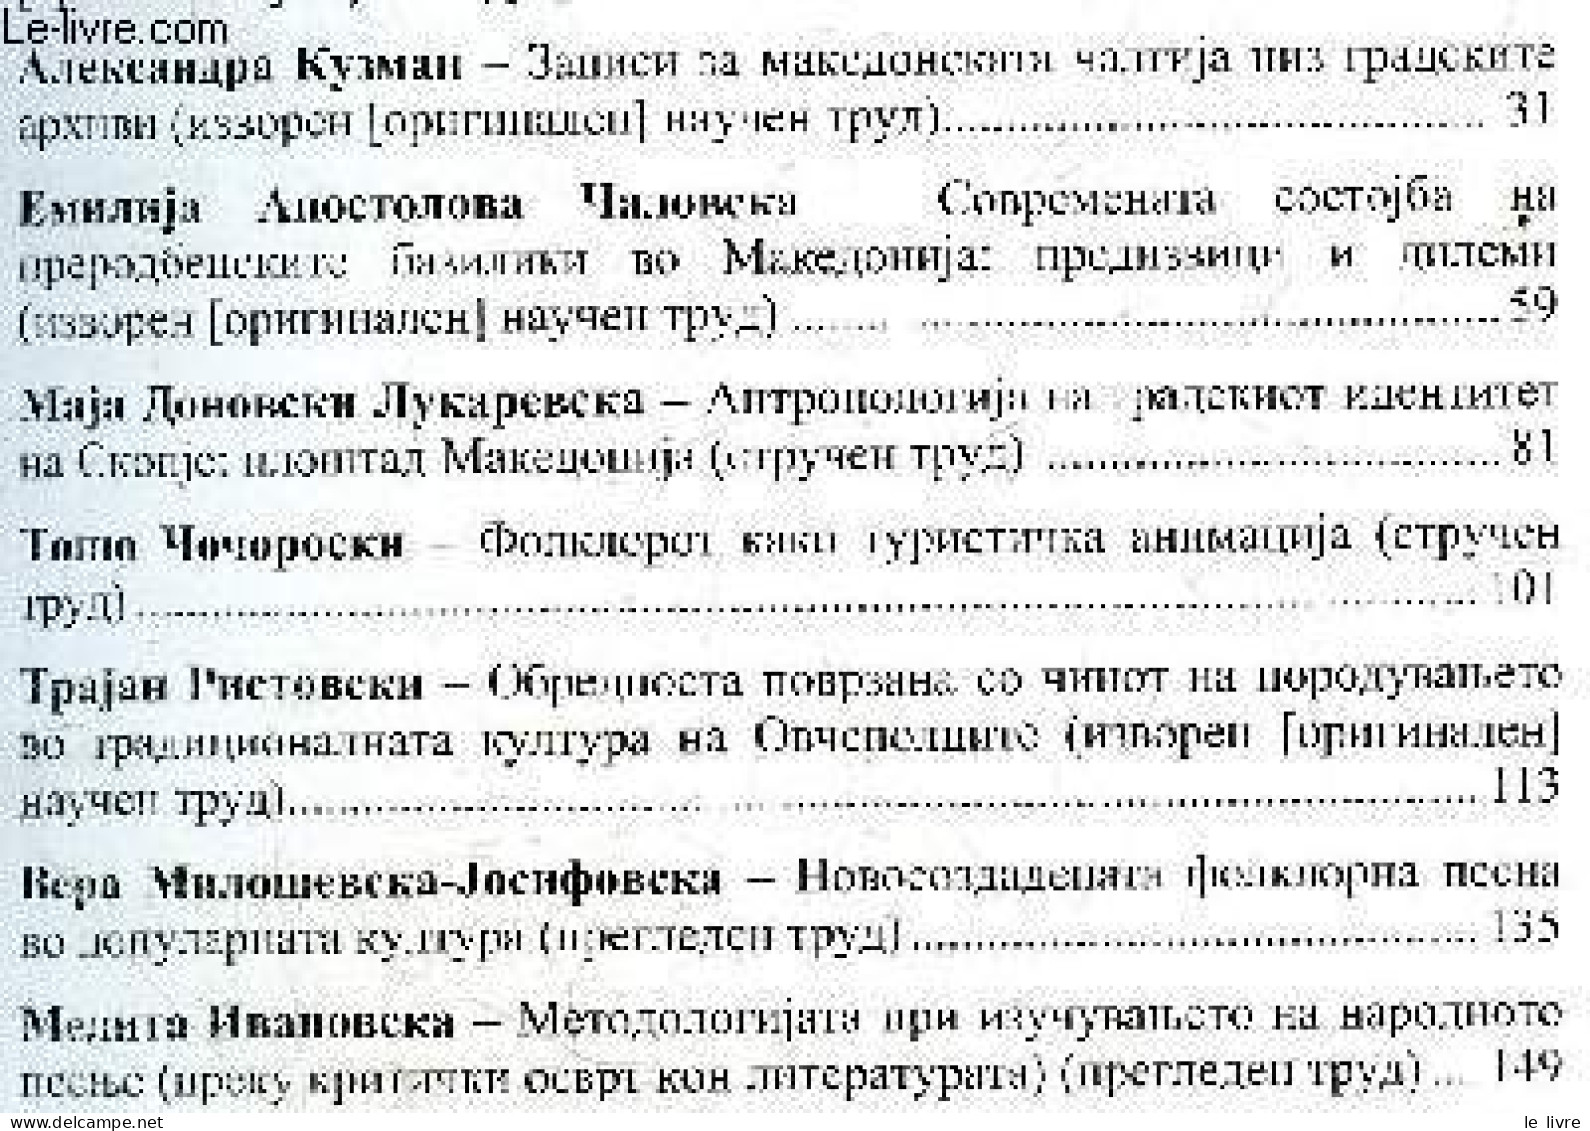 Makedonski Folklor - Godina LIII, Broj 82, Skopje, 2022 - UDC 398 / Folklore Macédonien - Volume 82, Annee LIII / Macedo - Cultura